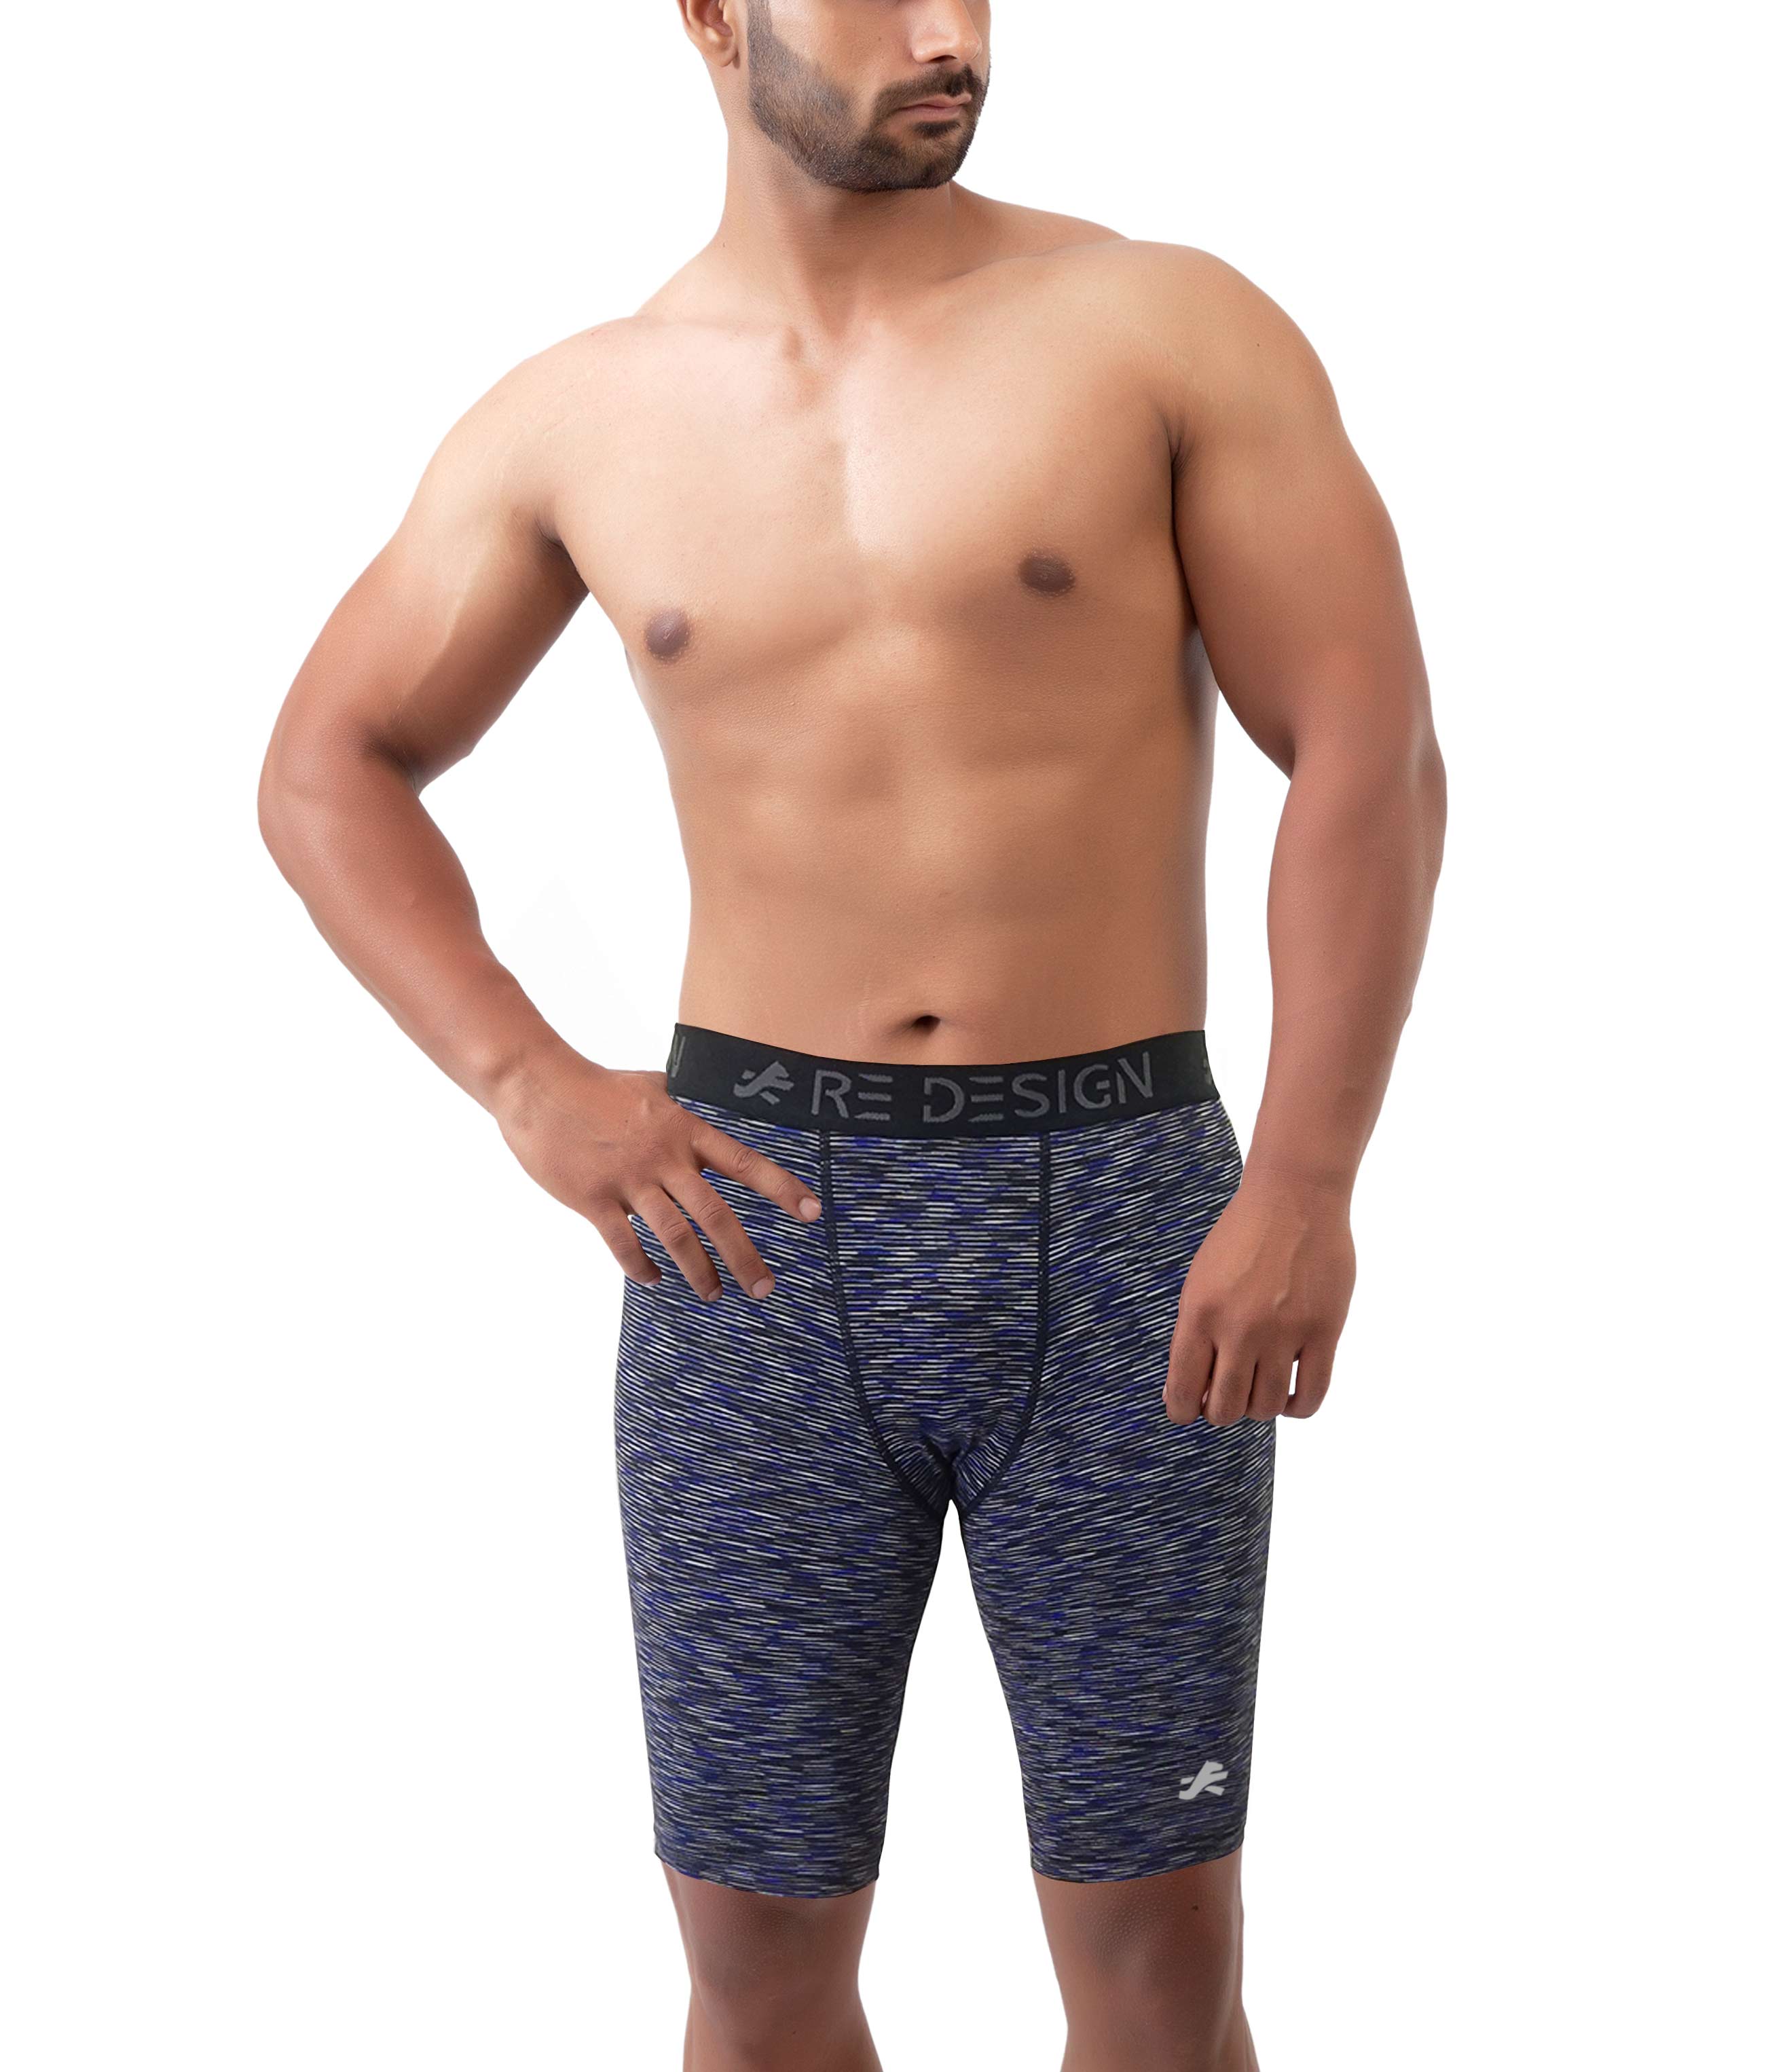 Endurance Compression Shorts for Men– Athletic Baselayer